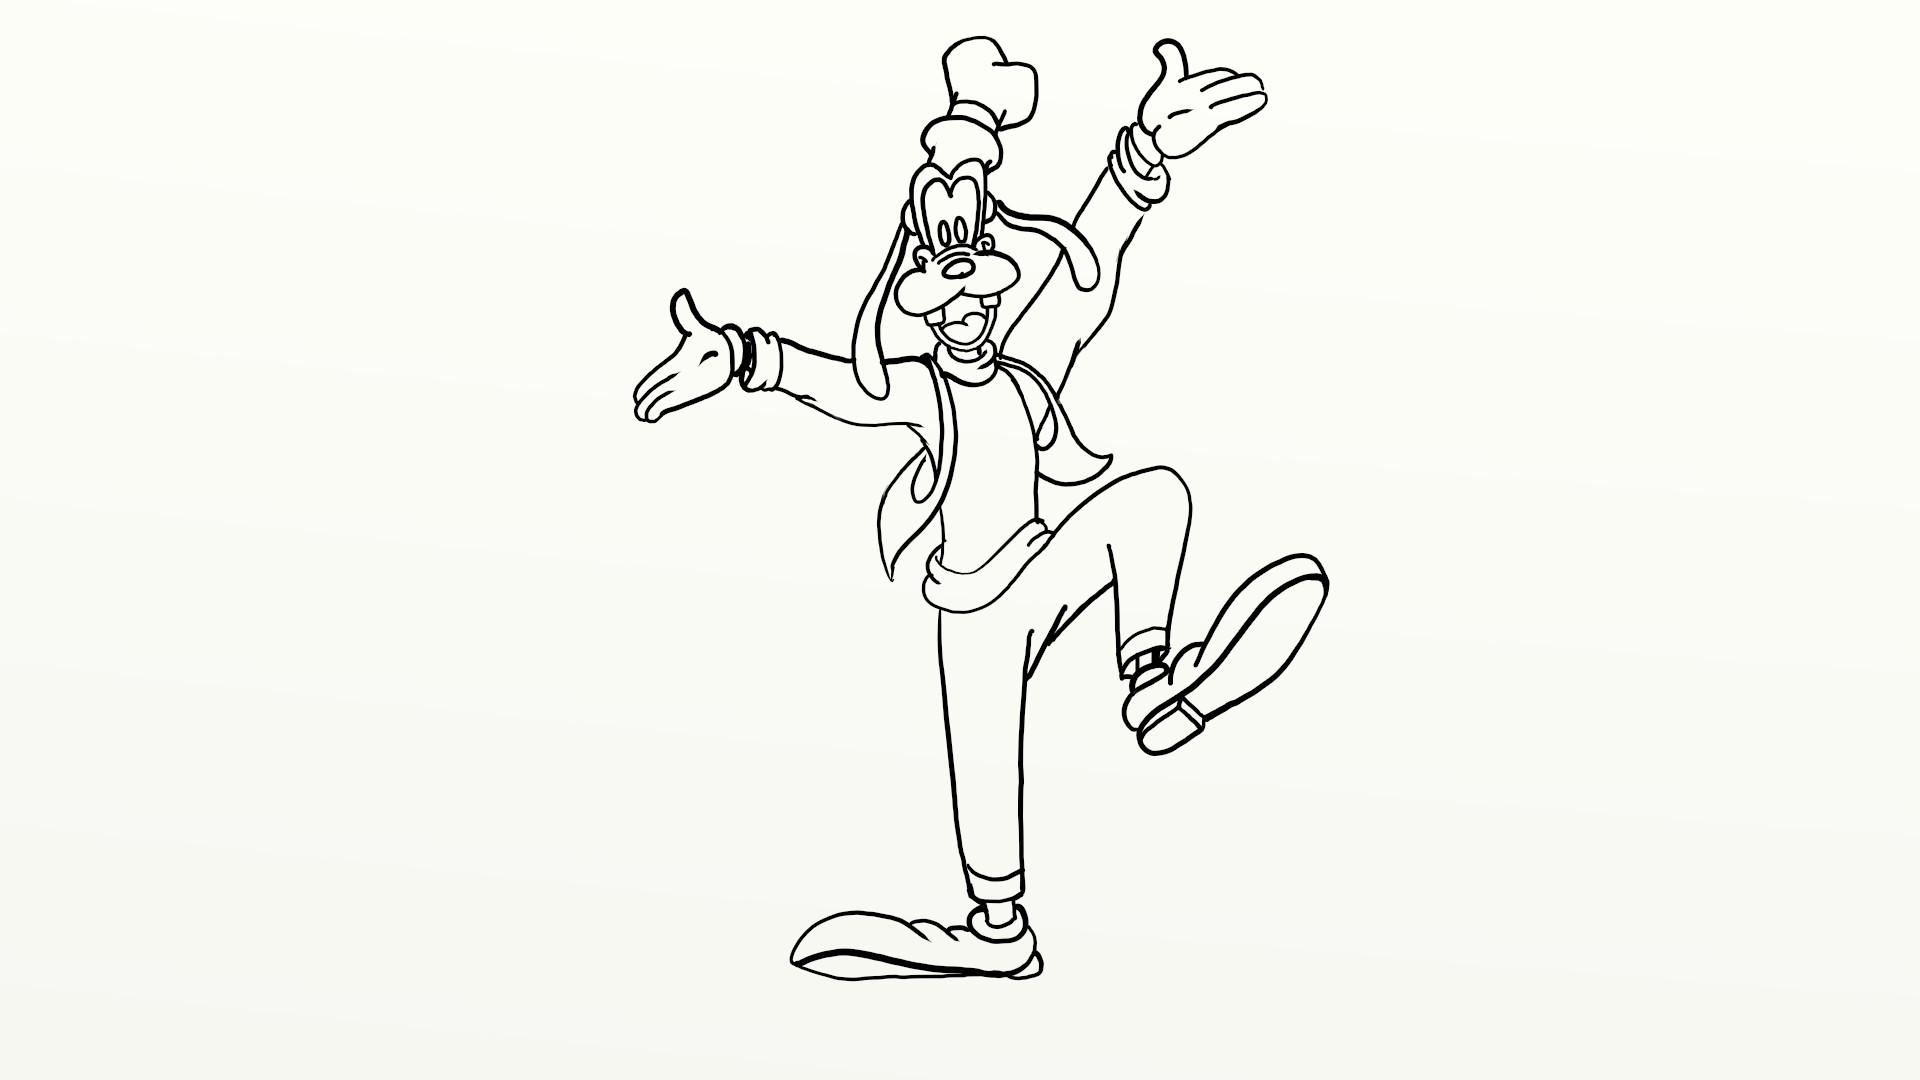 Daily Cartoon Drawings - Drawing Goofy